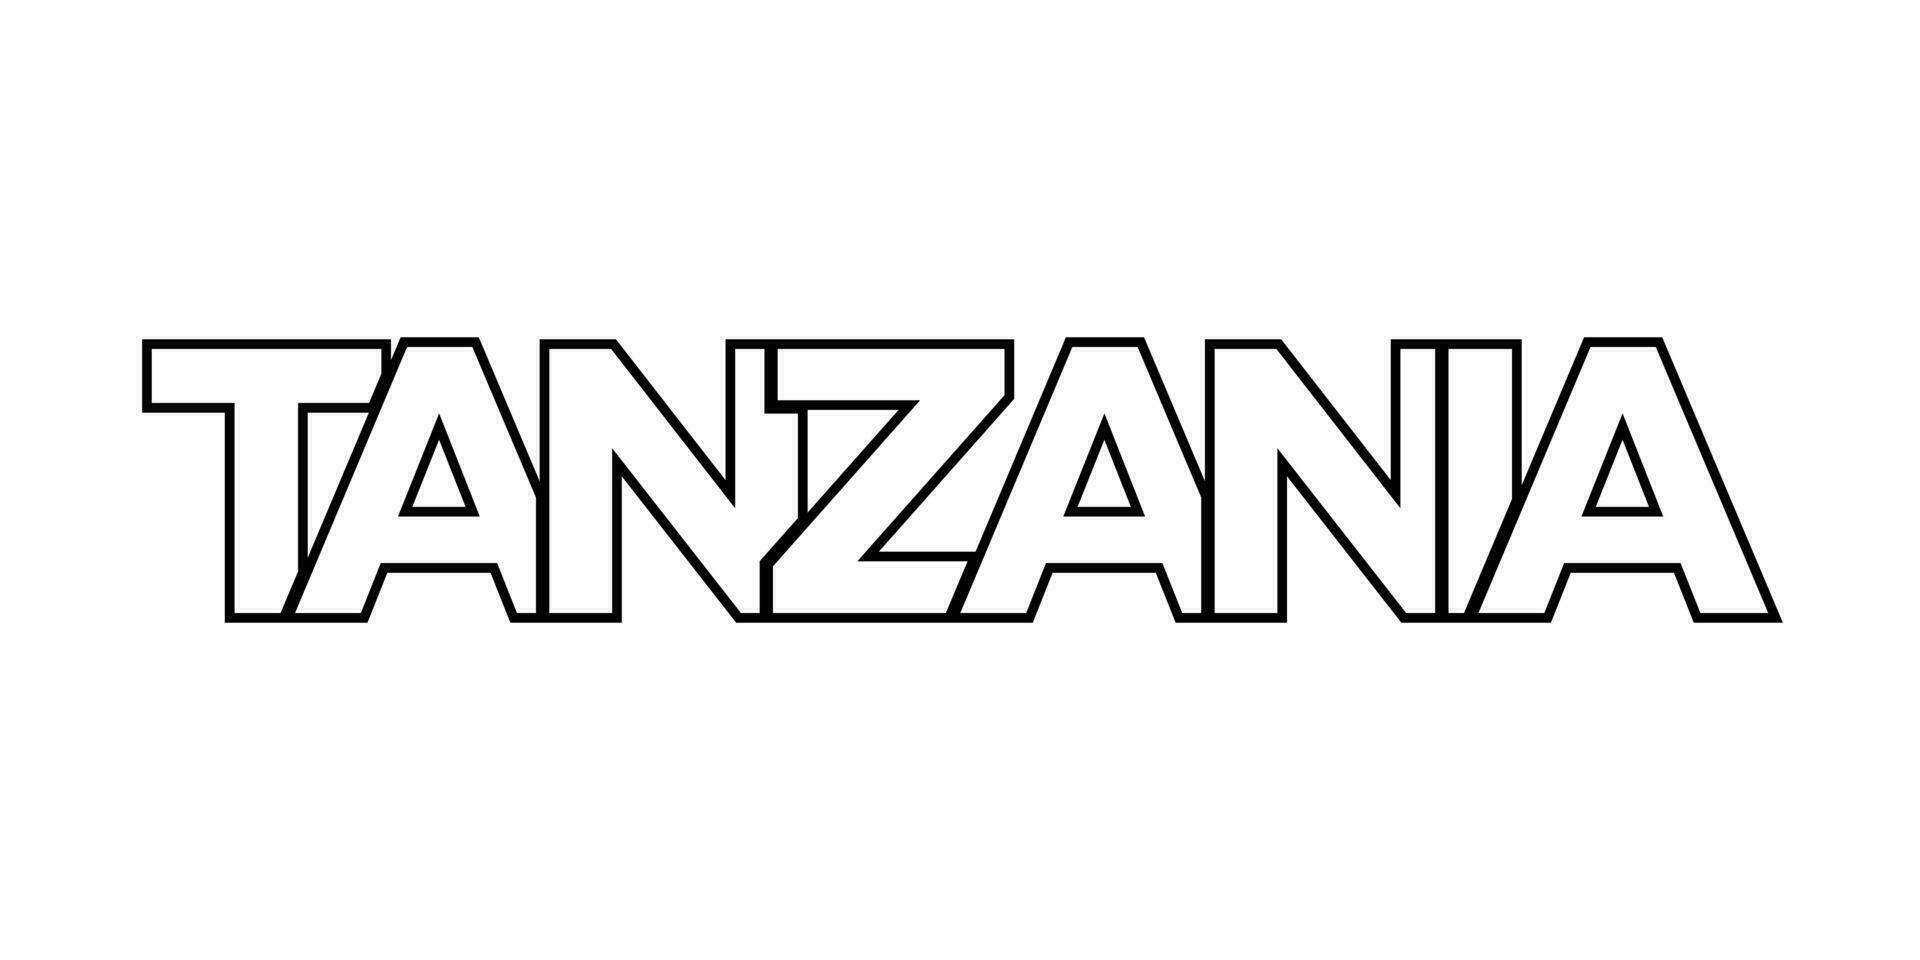 tanzania emblem. de design funktioner en geometrisk stil, vektor illustration med djärv typografi i en modern font. de grafisk slogan text.